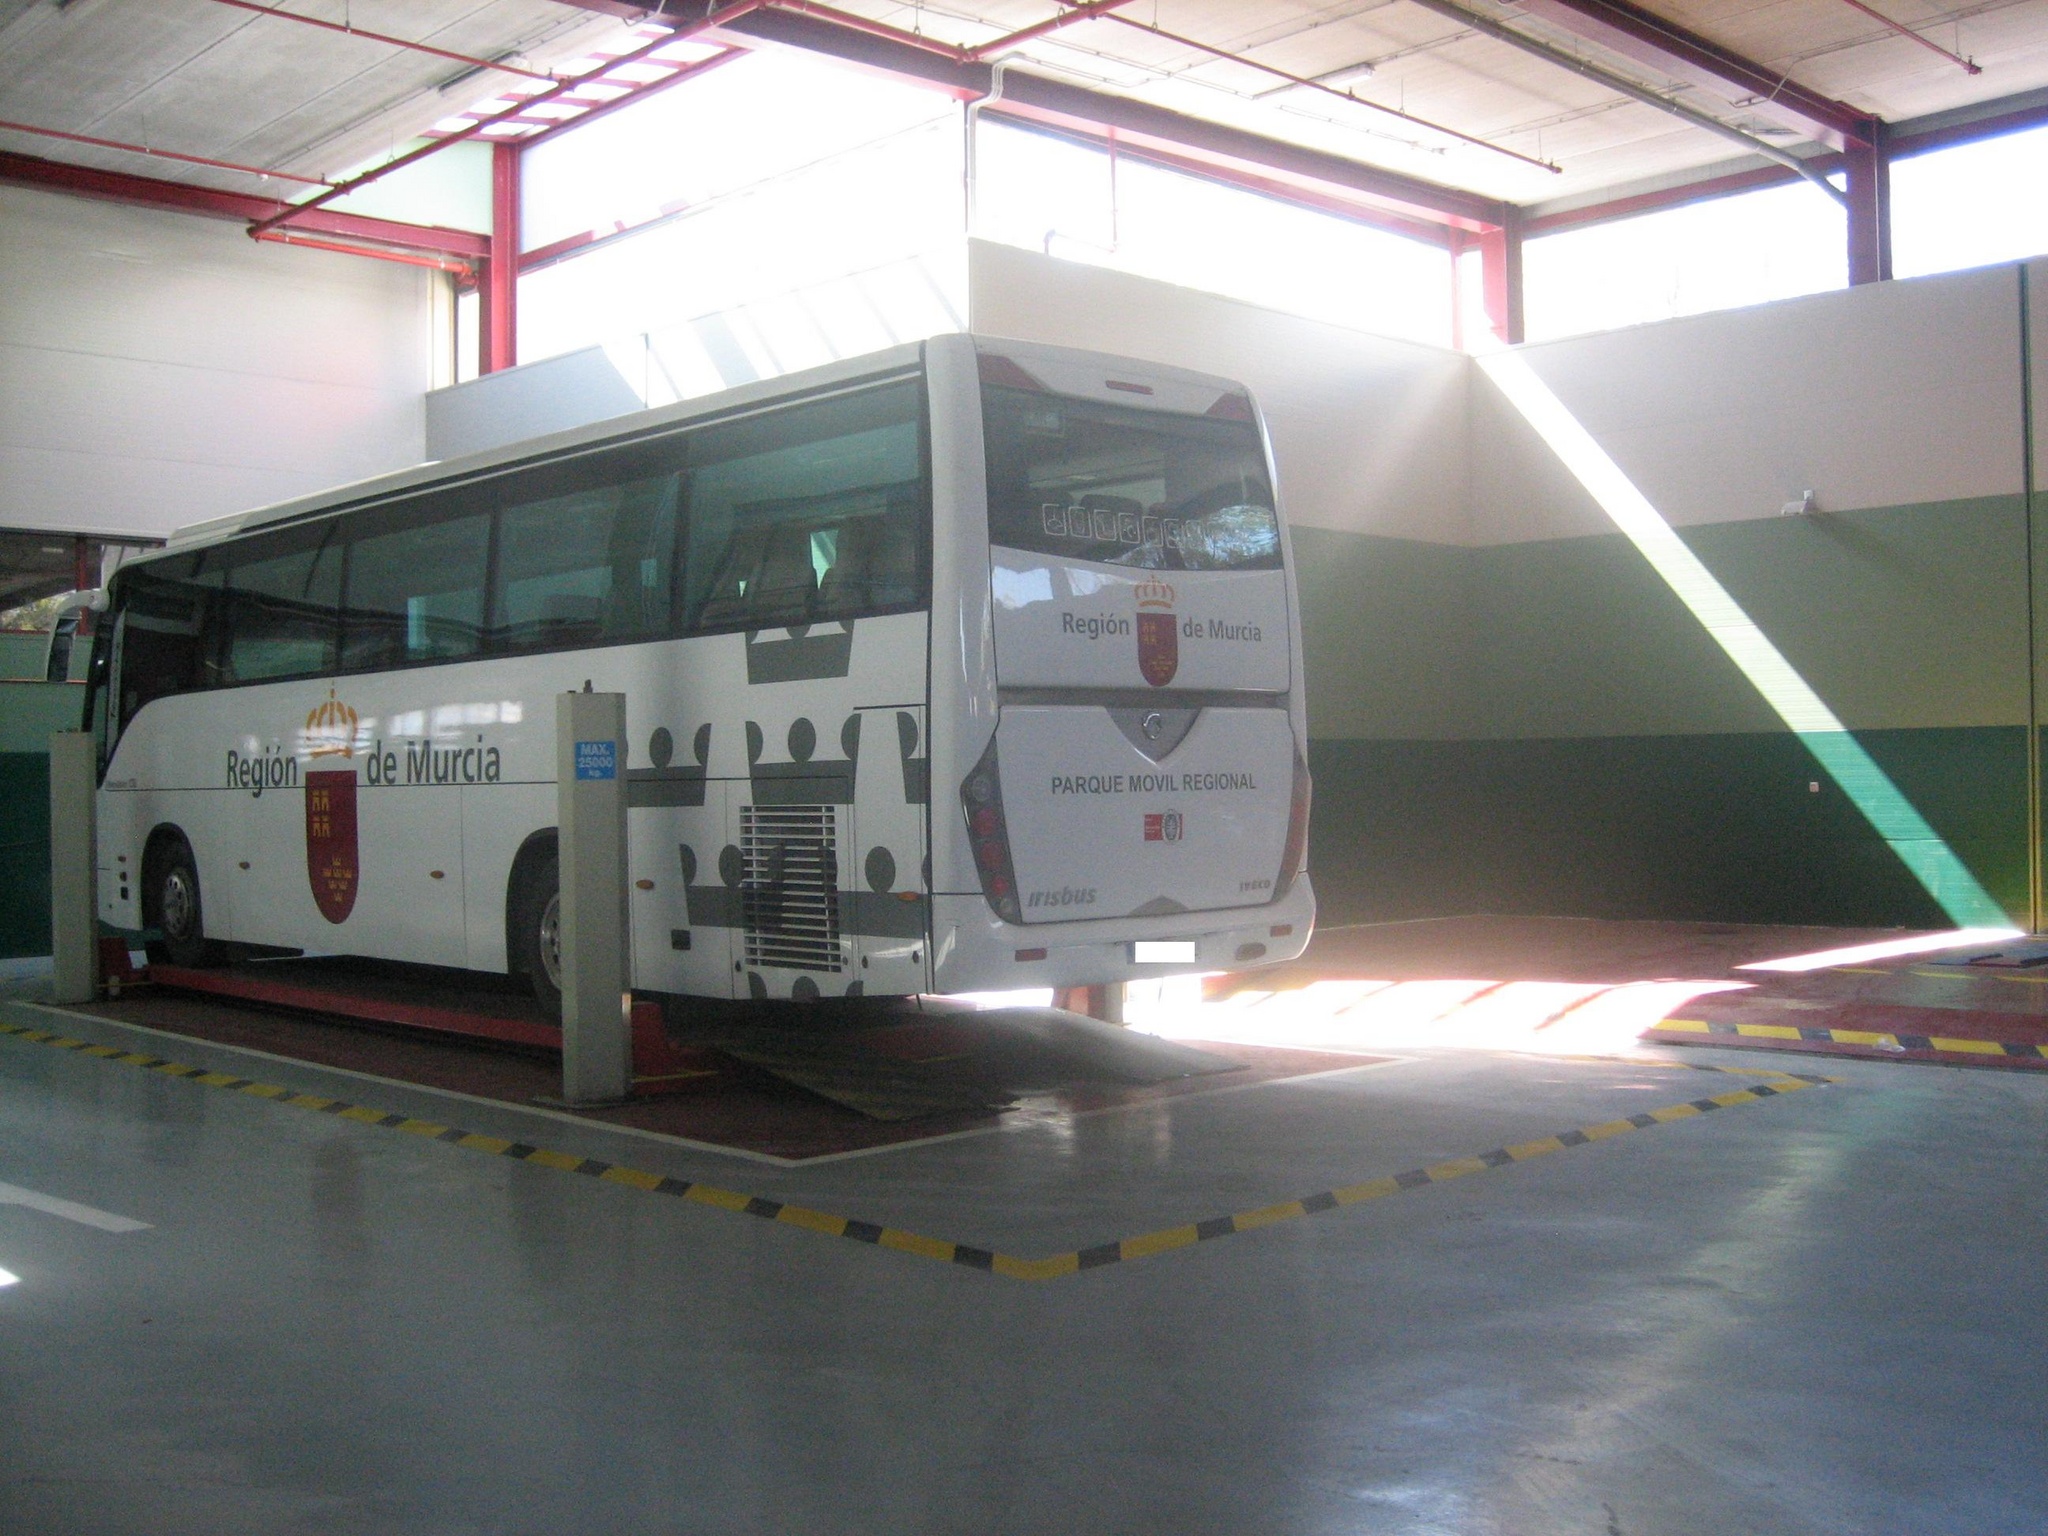 Elevador autobuses (2009)